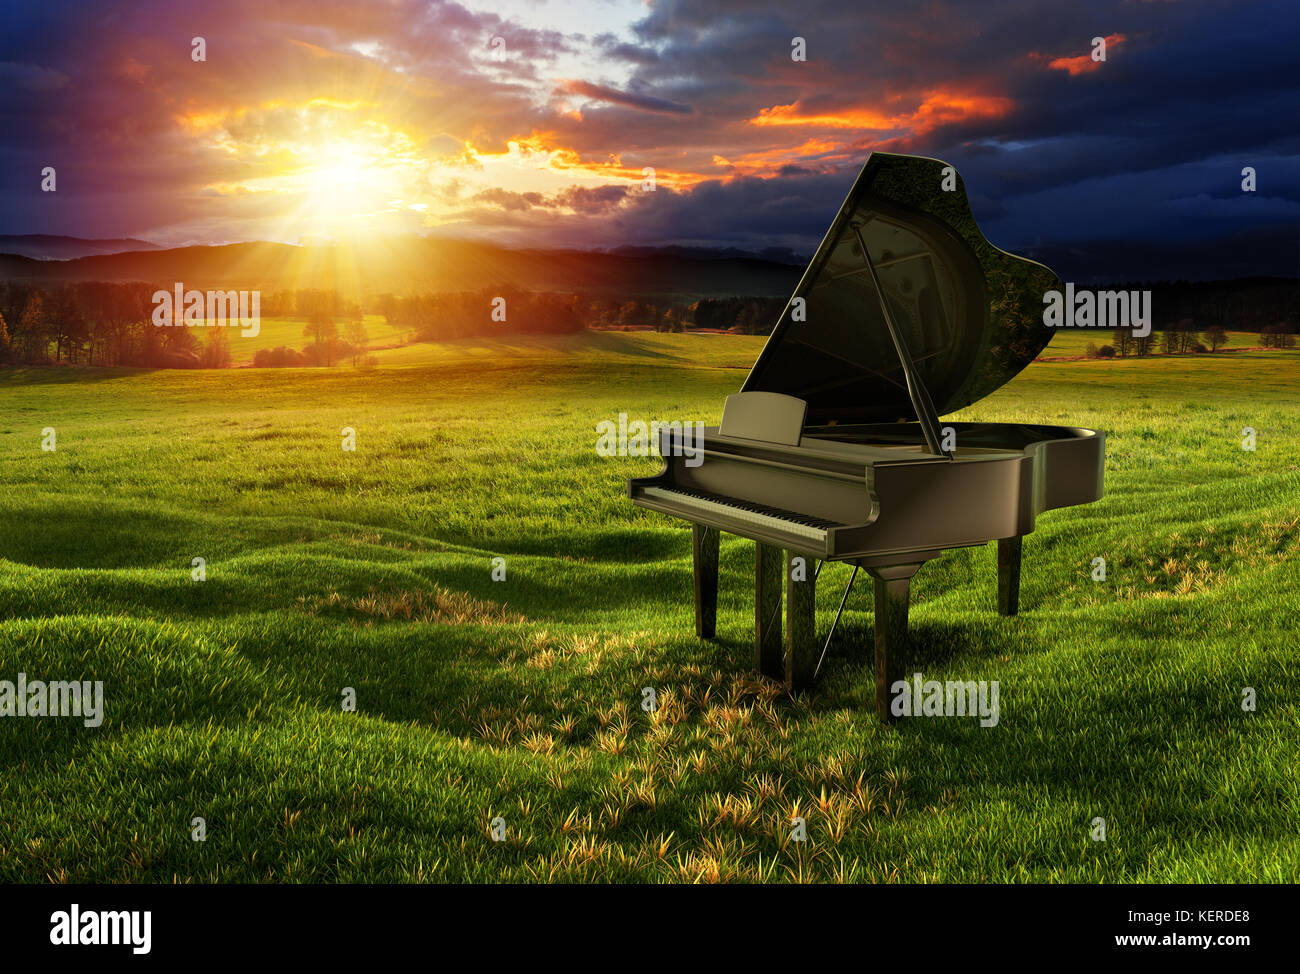 Piano noir brillant sur la prairie sous le ciel dramatique avec des lumières ensoleillées. Montage de photos avec illustration de rendu 3D. Banque D'Images